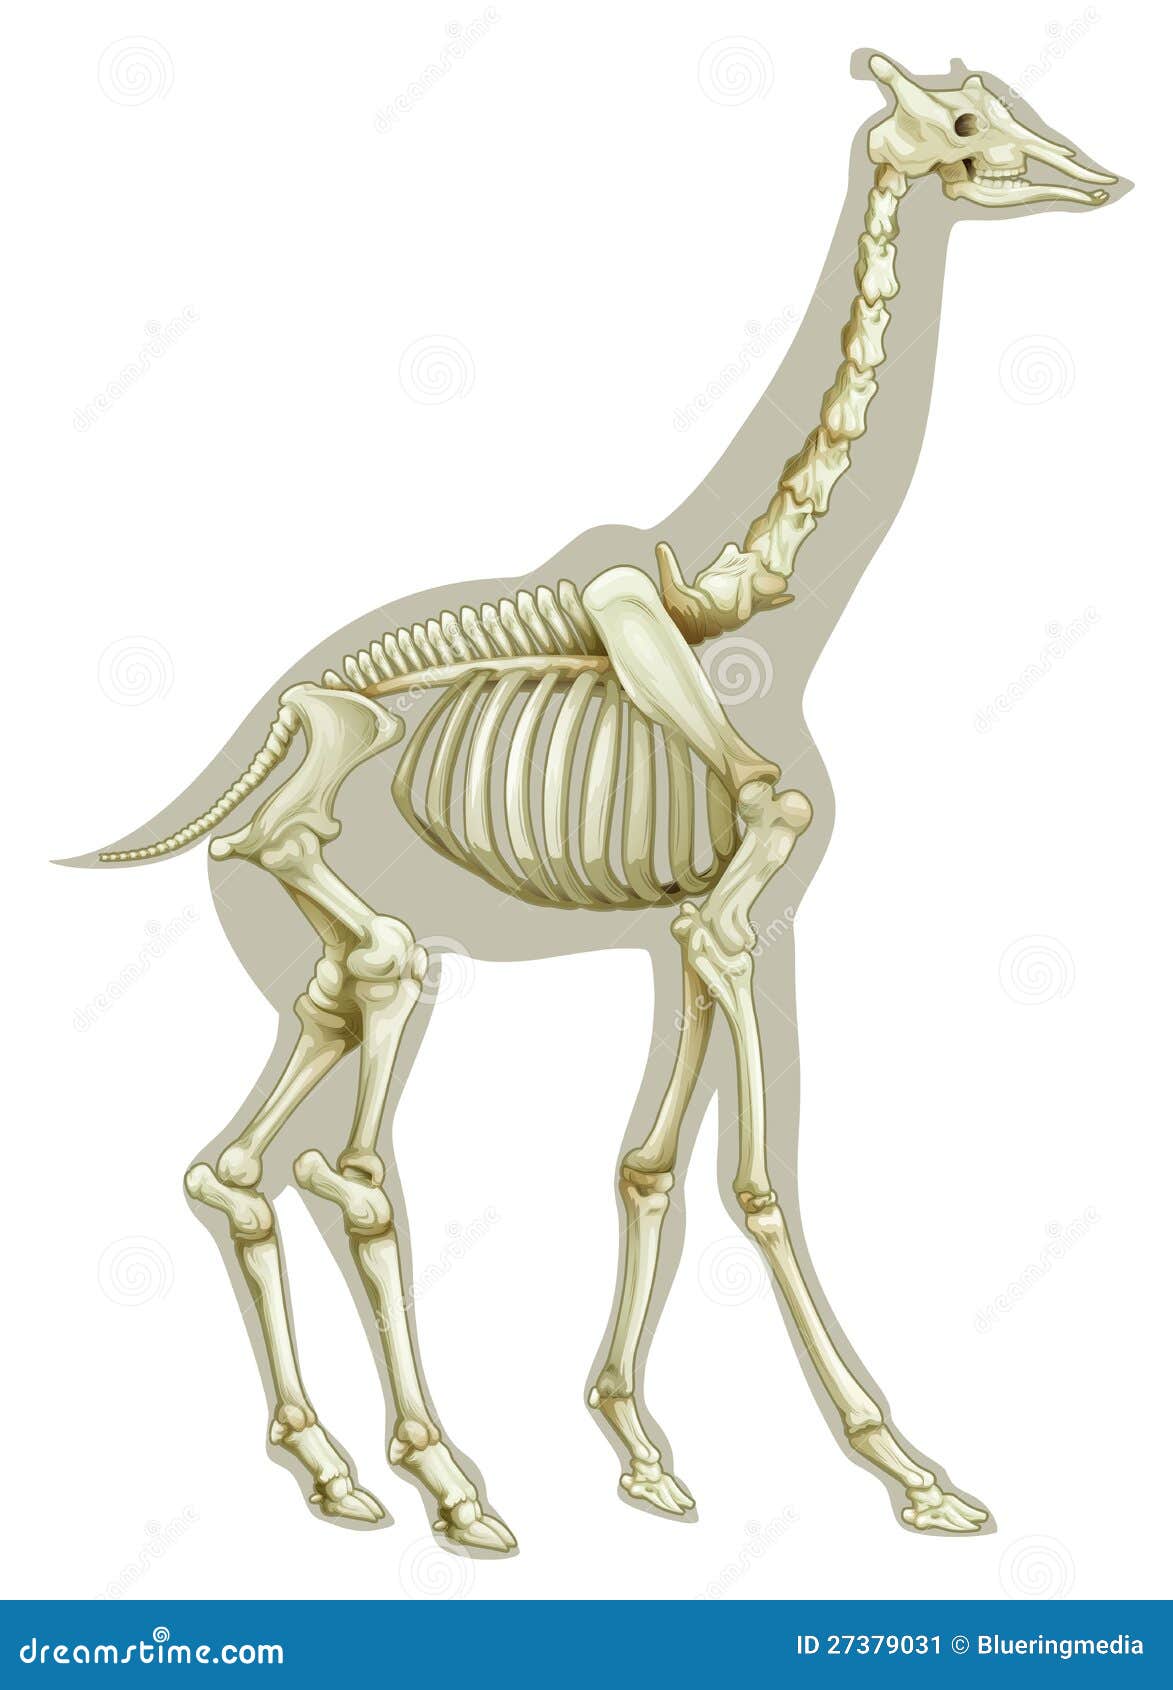 鹿头骨骨骼化石maya模型,提供obj文件,有贴图_哺乳动物模型下载-摩尔网CGMOL